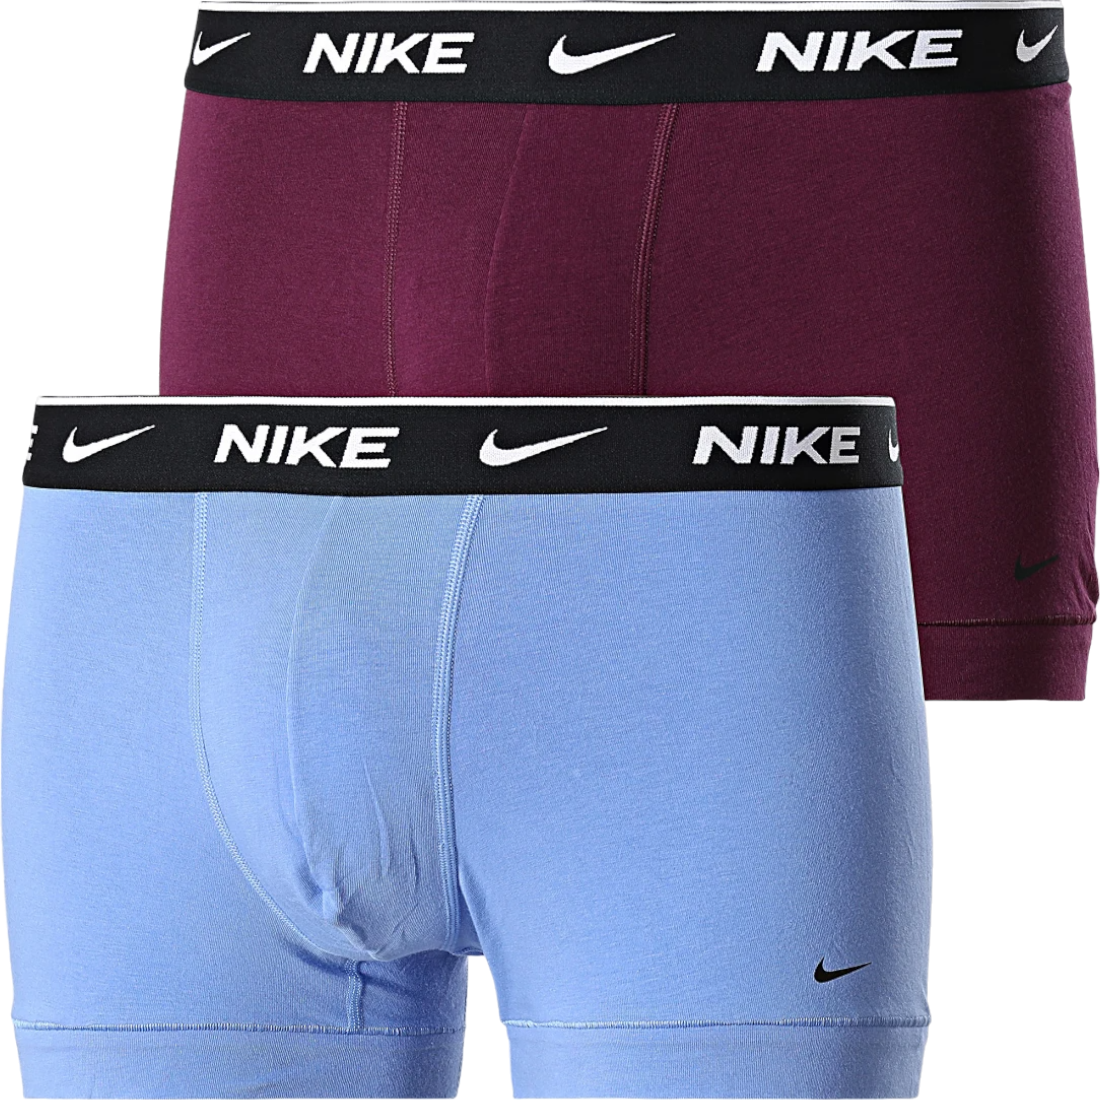 Caleçon Nike Cotton Trunk 2 pcs